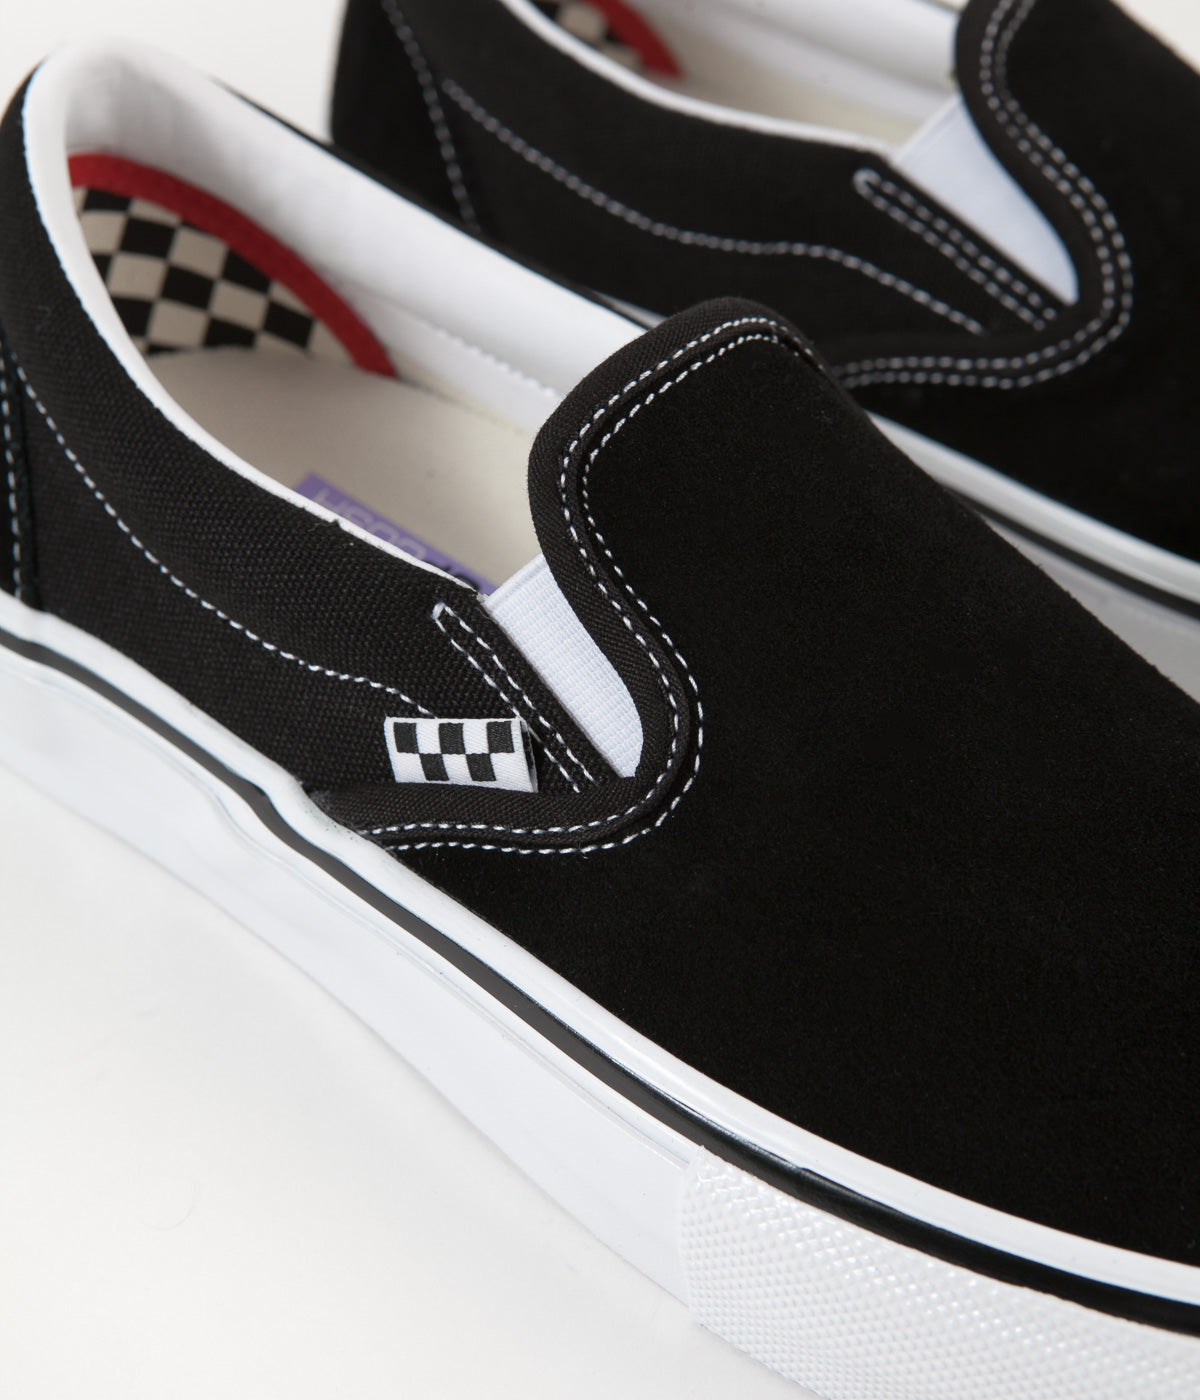 Vans Skate Slip-On Shoes - Black / White | Flatspot